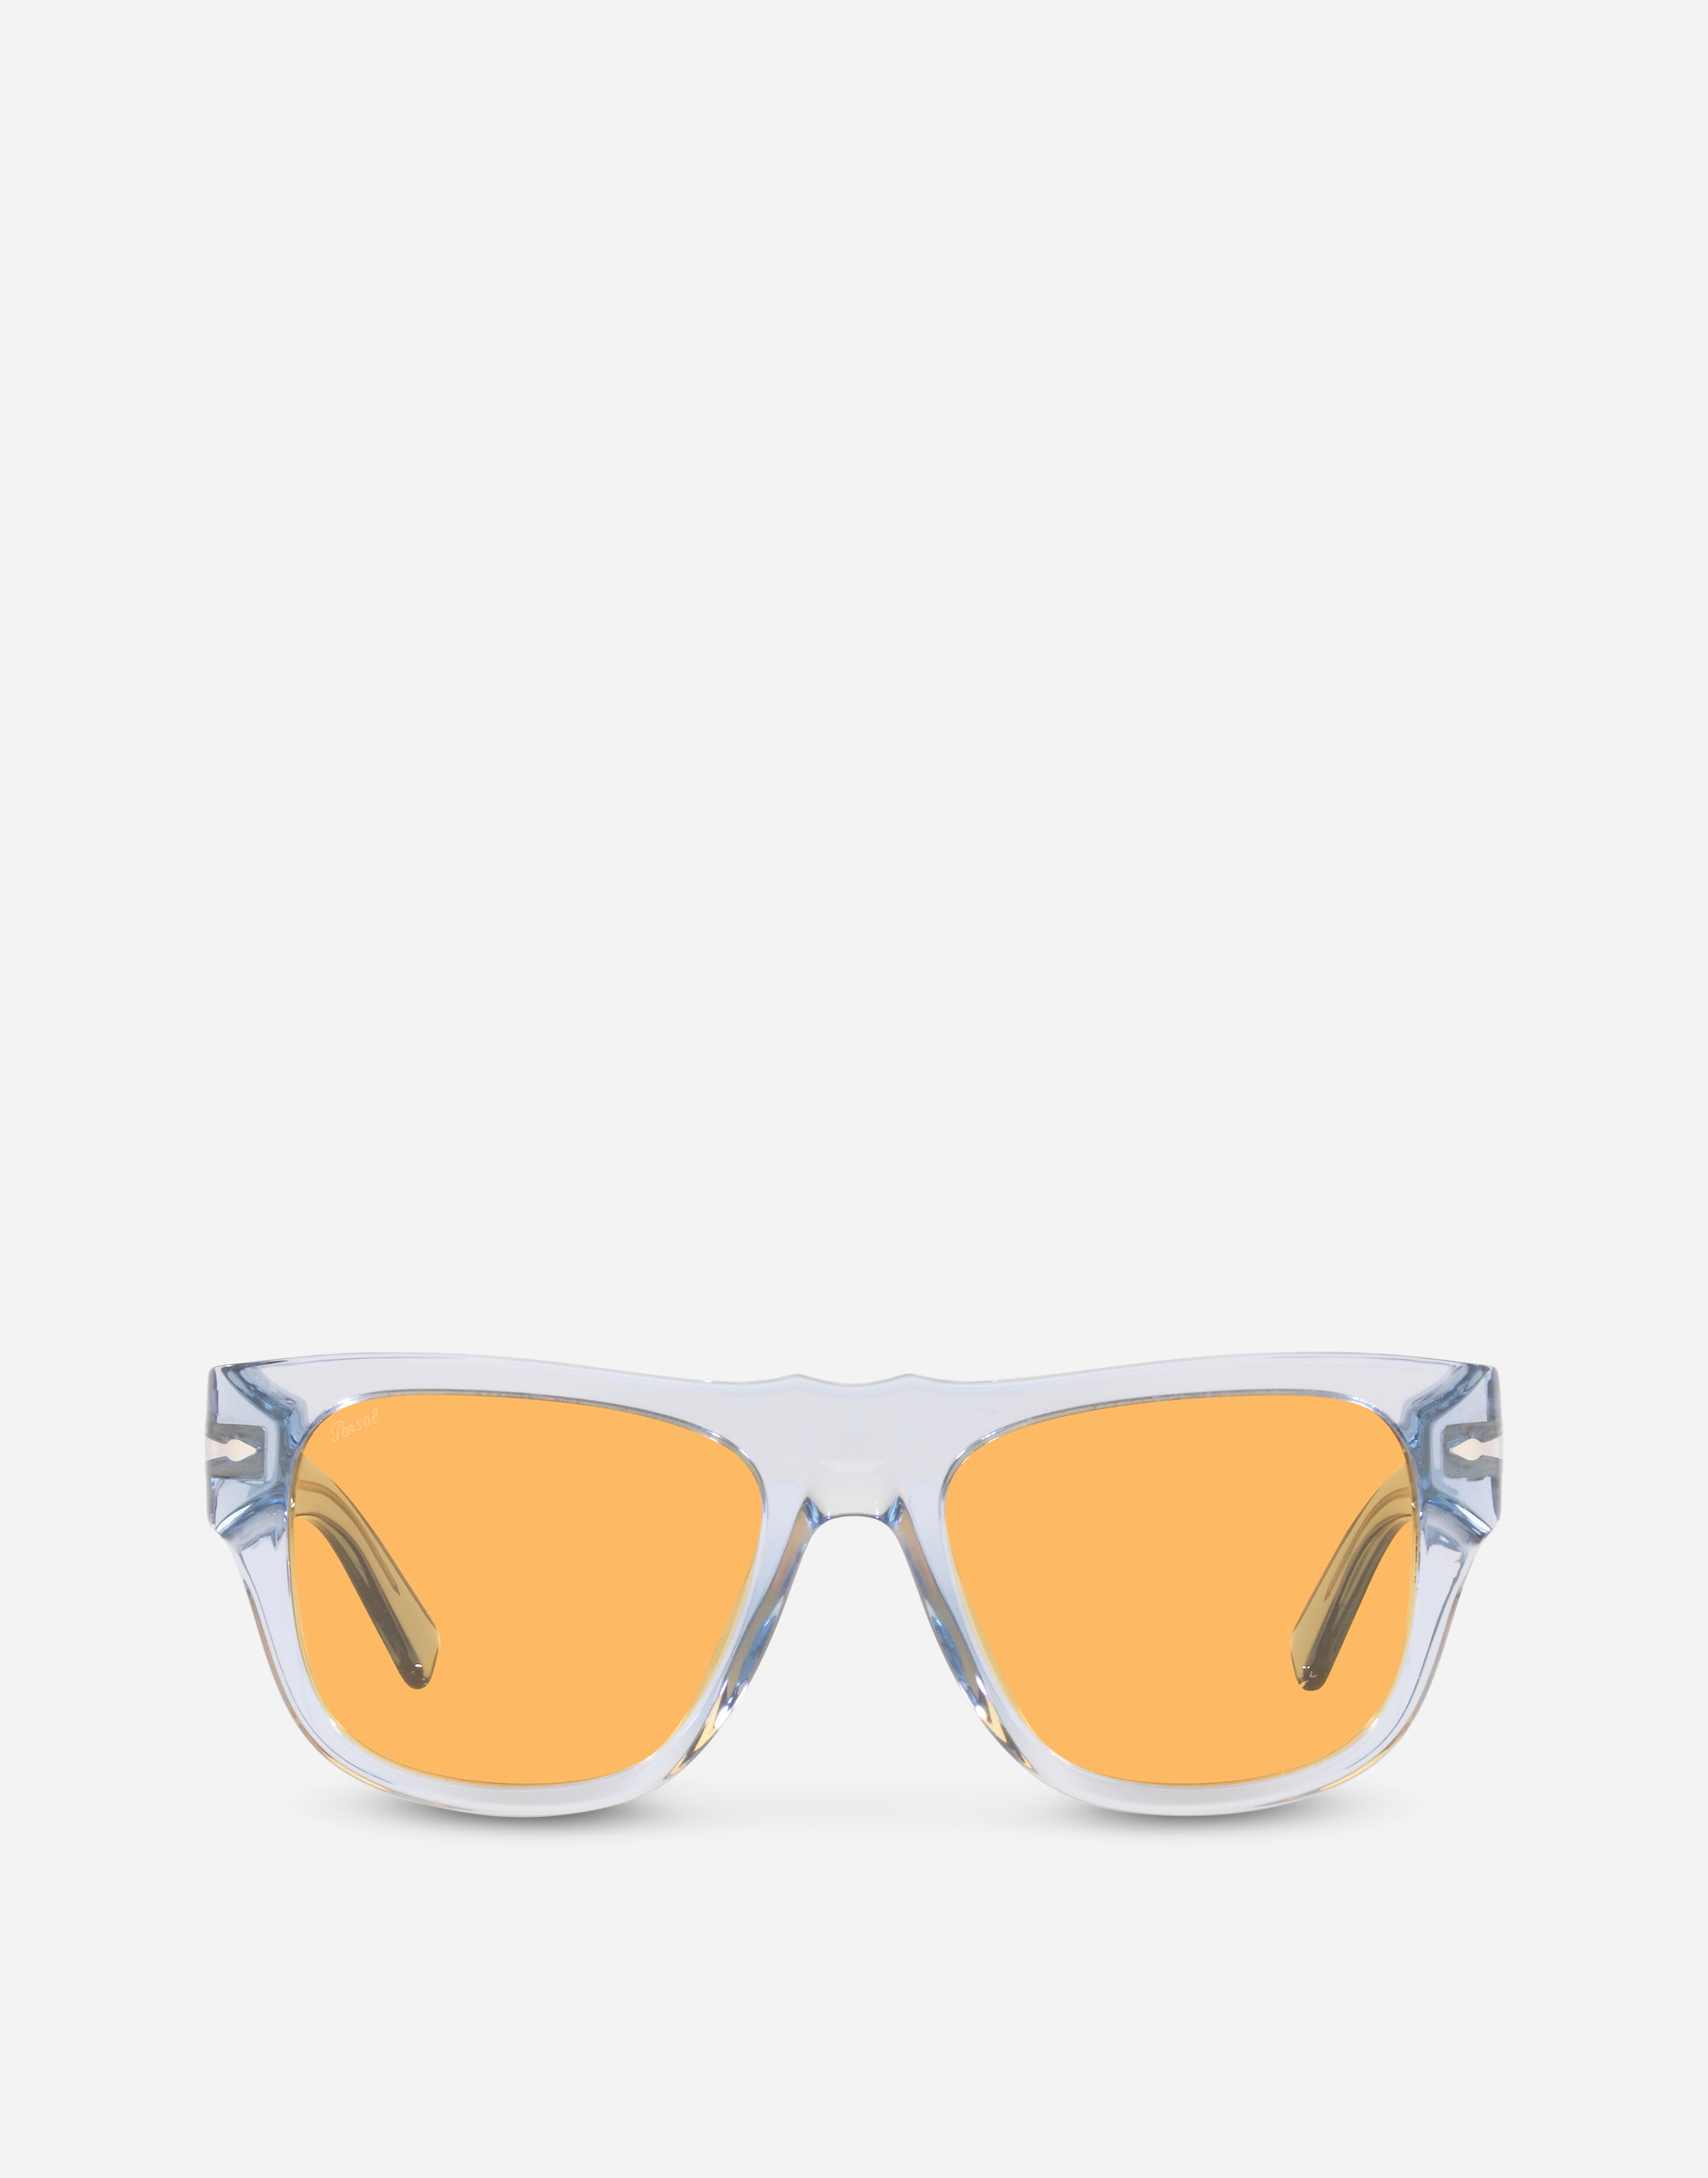 Dolce&Gabbana x Persol sunglasses in transparent azure